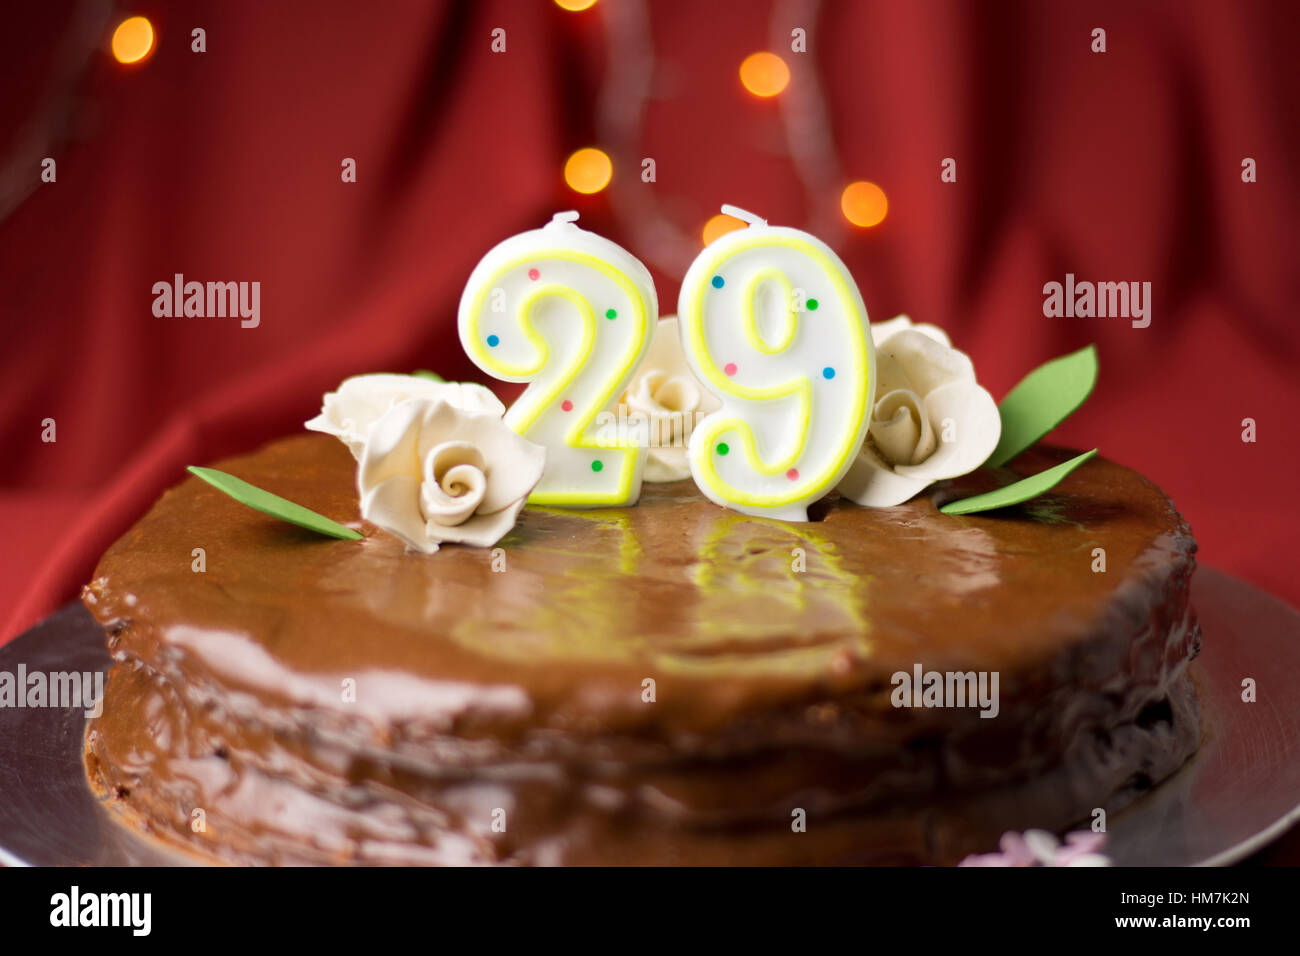 29th Birthday Banque De Photographies Et D Images A Haute Resolution Alamy